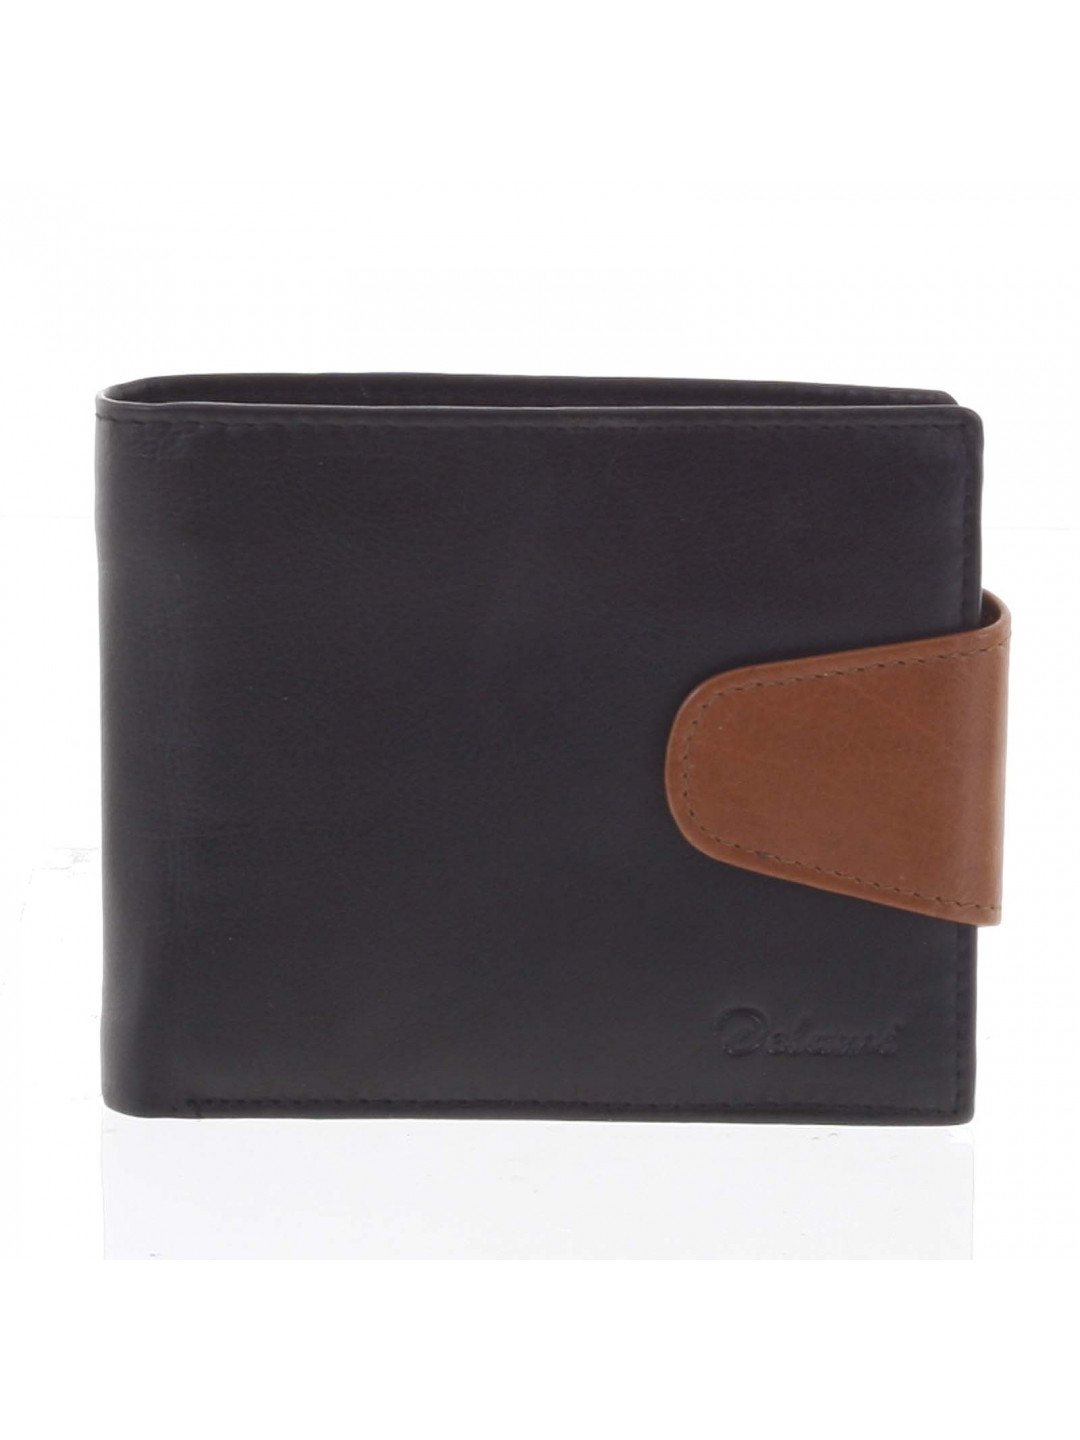 Pánská kožená peněženka černo hnědá – Delami 11816